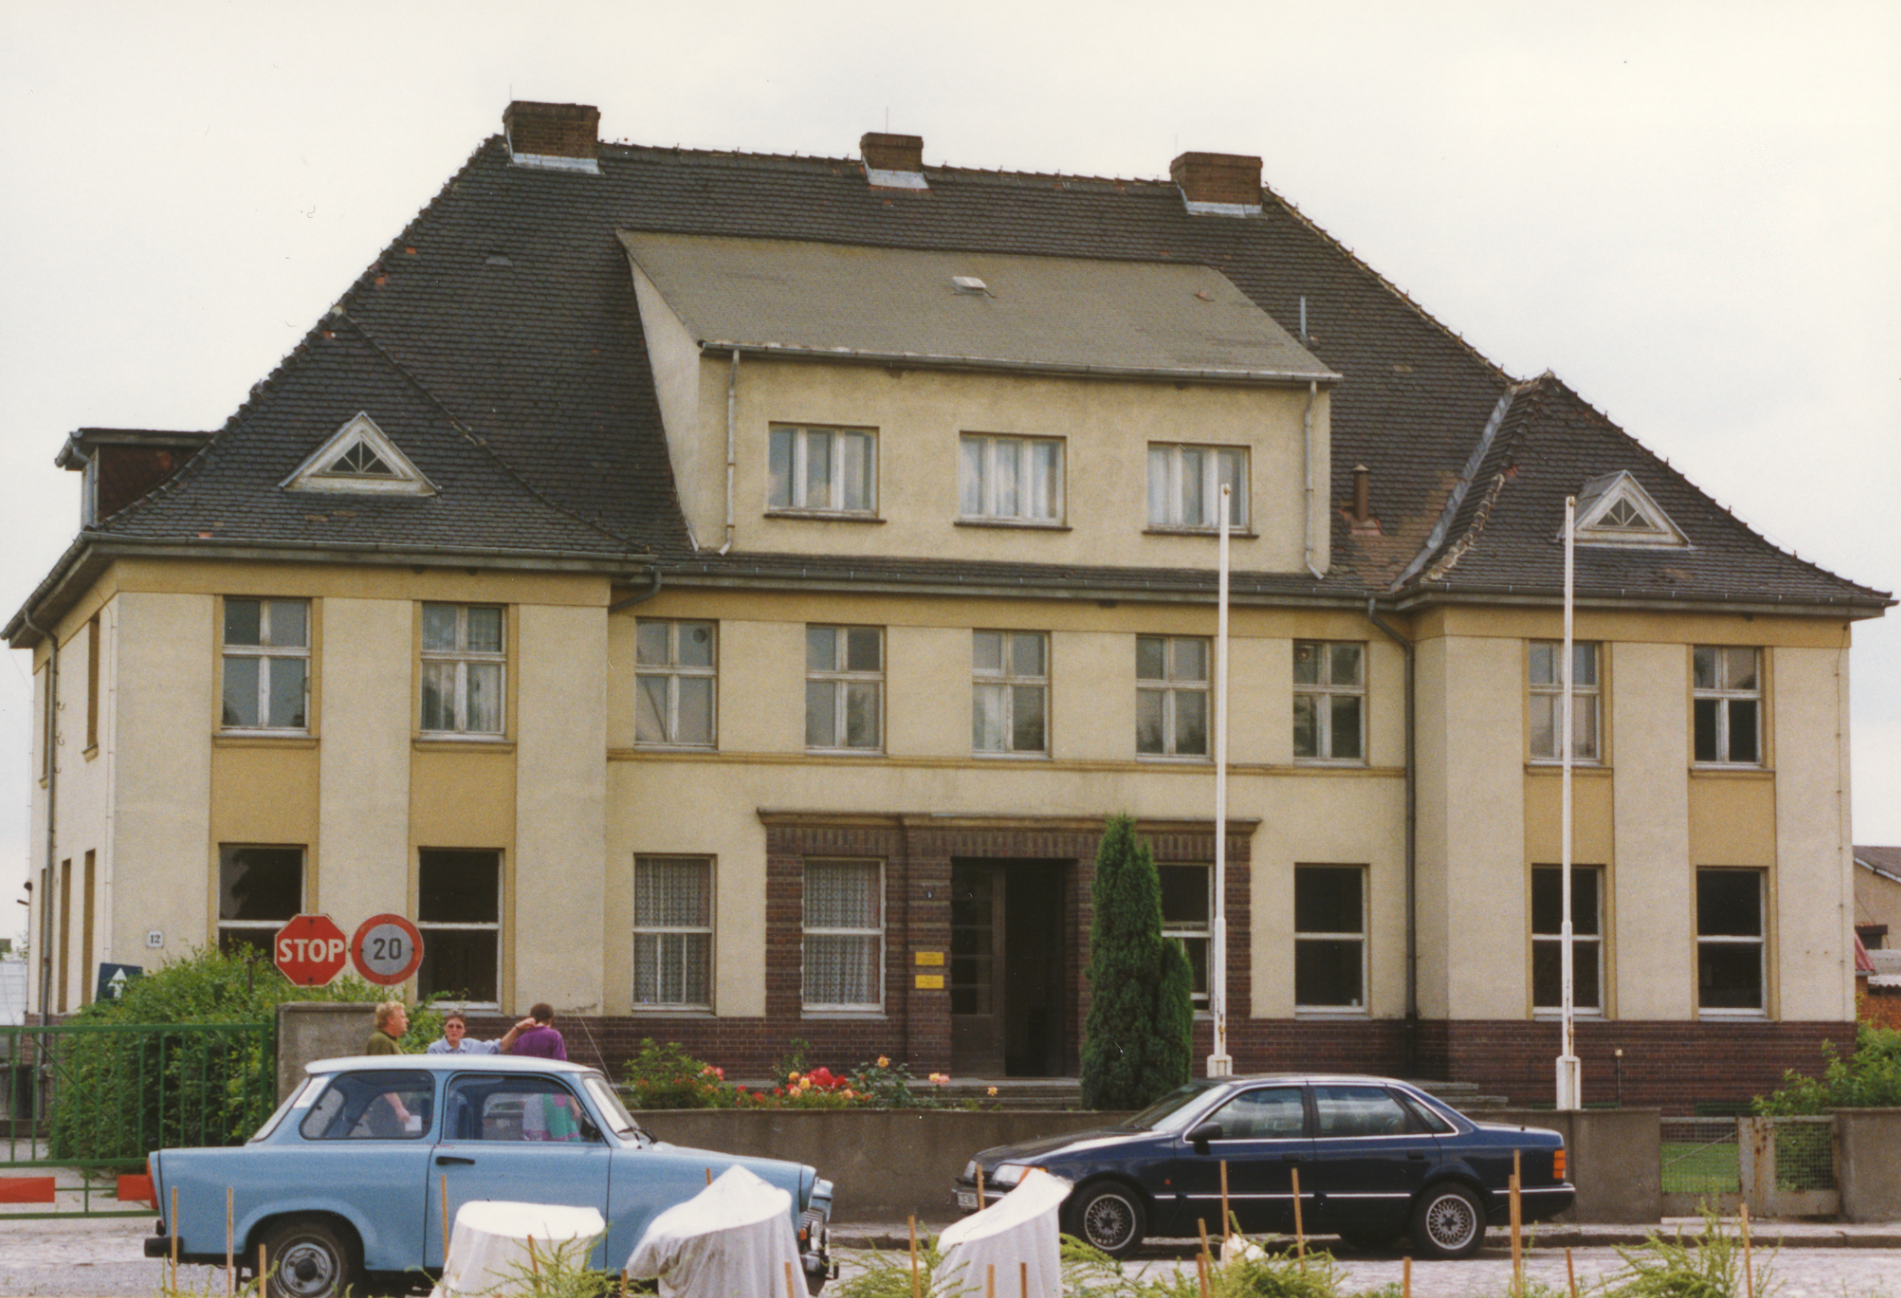 Institut za uzgoj biljaka u Kleinu Wanzlebenu, osnovan 1930. godine, danas je upravna zgrada uzgoja